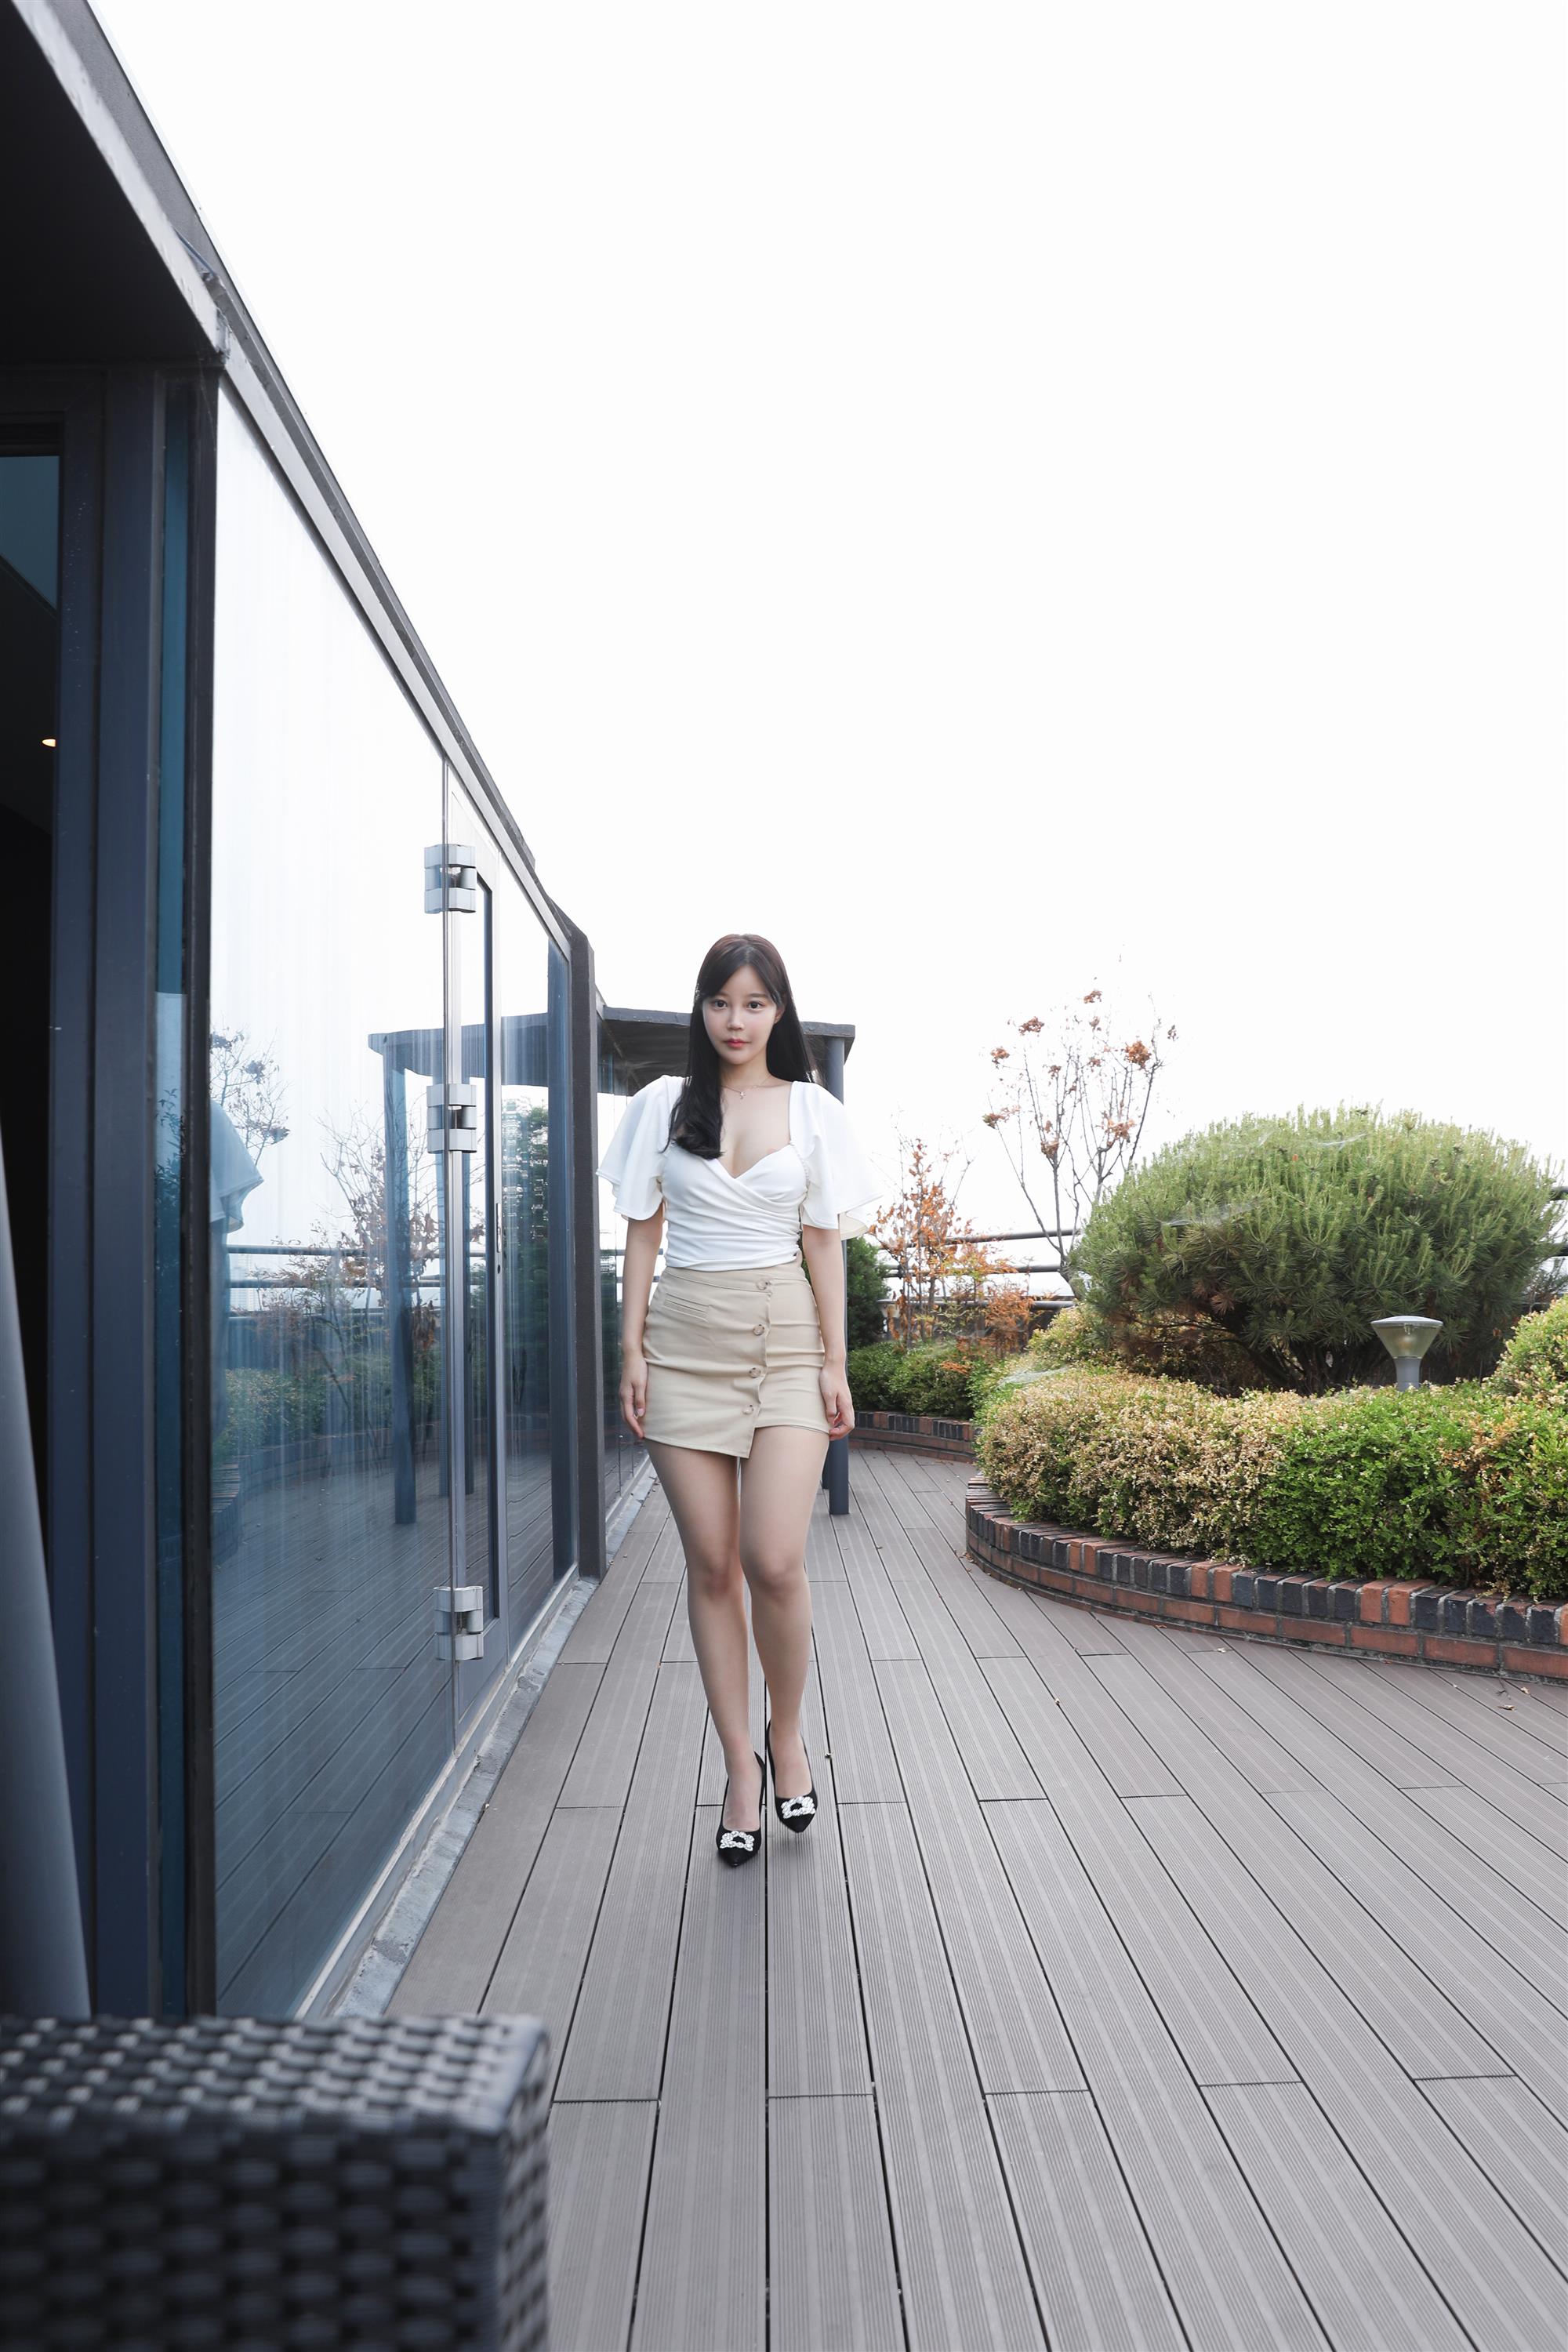 BUNNY Joo Yeon A girl friend S.1 A blind date - 2.jpg